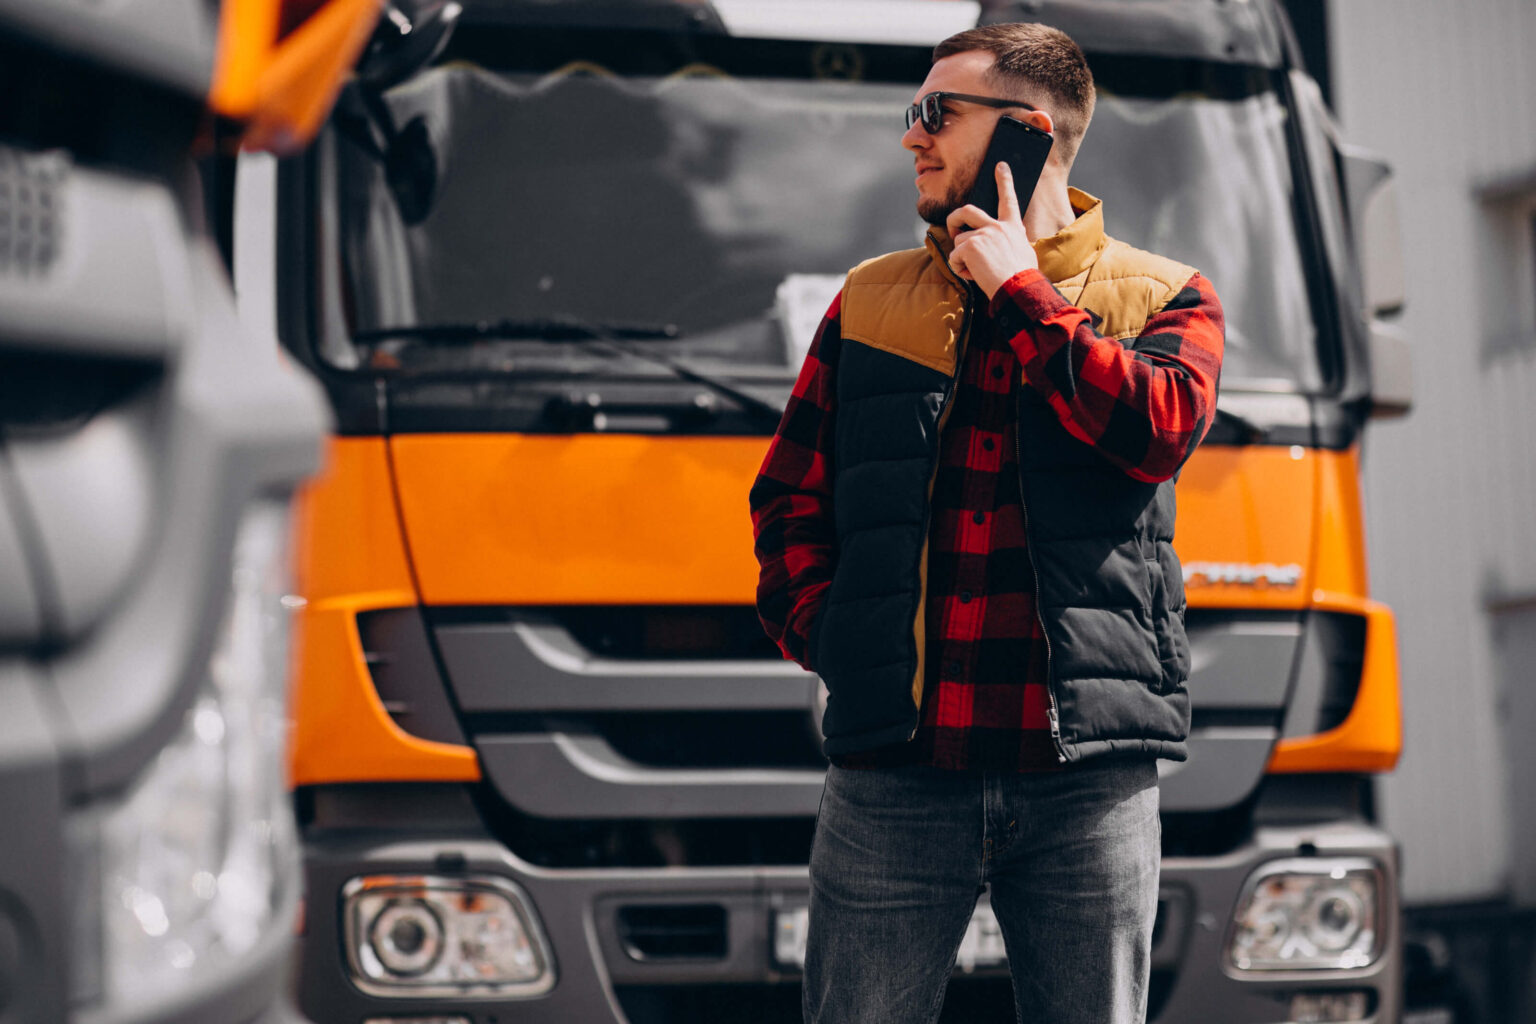 Kierowca ciężarówki firmy Sway, z uprawnieniami ADR, rozmawia przez telefon przed ciężarówką, symbolizując profesjonalizm w logistyce i transporcie towarów.